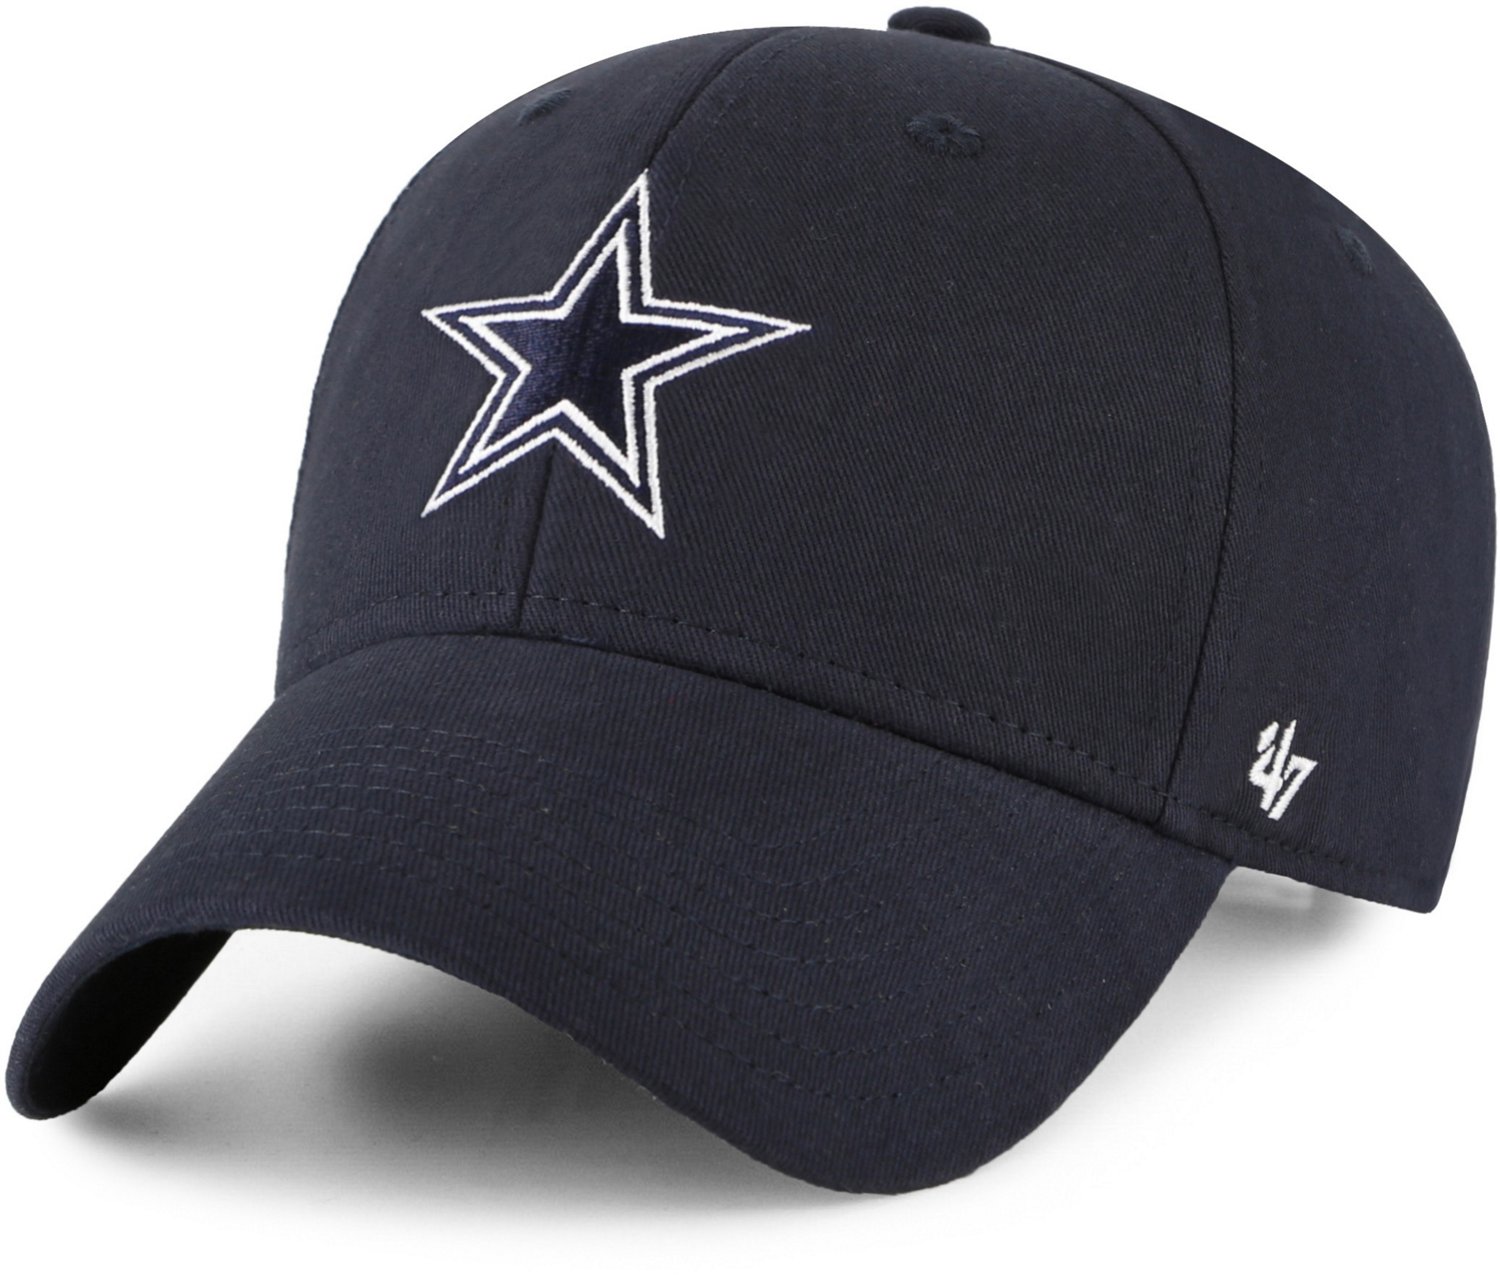 Cowboys official cap